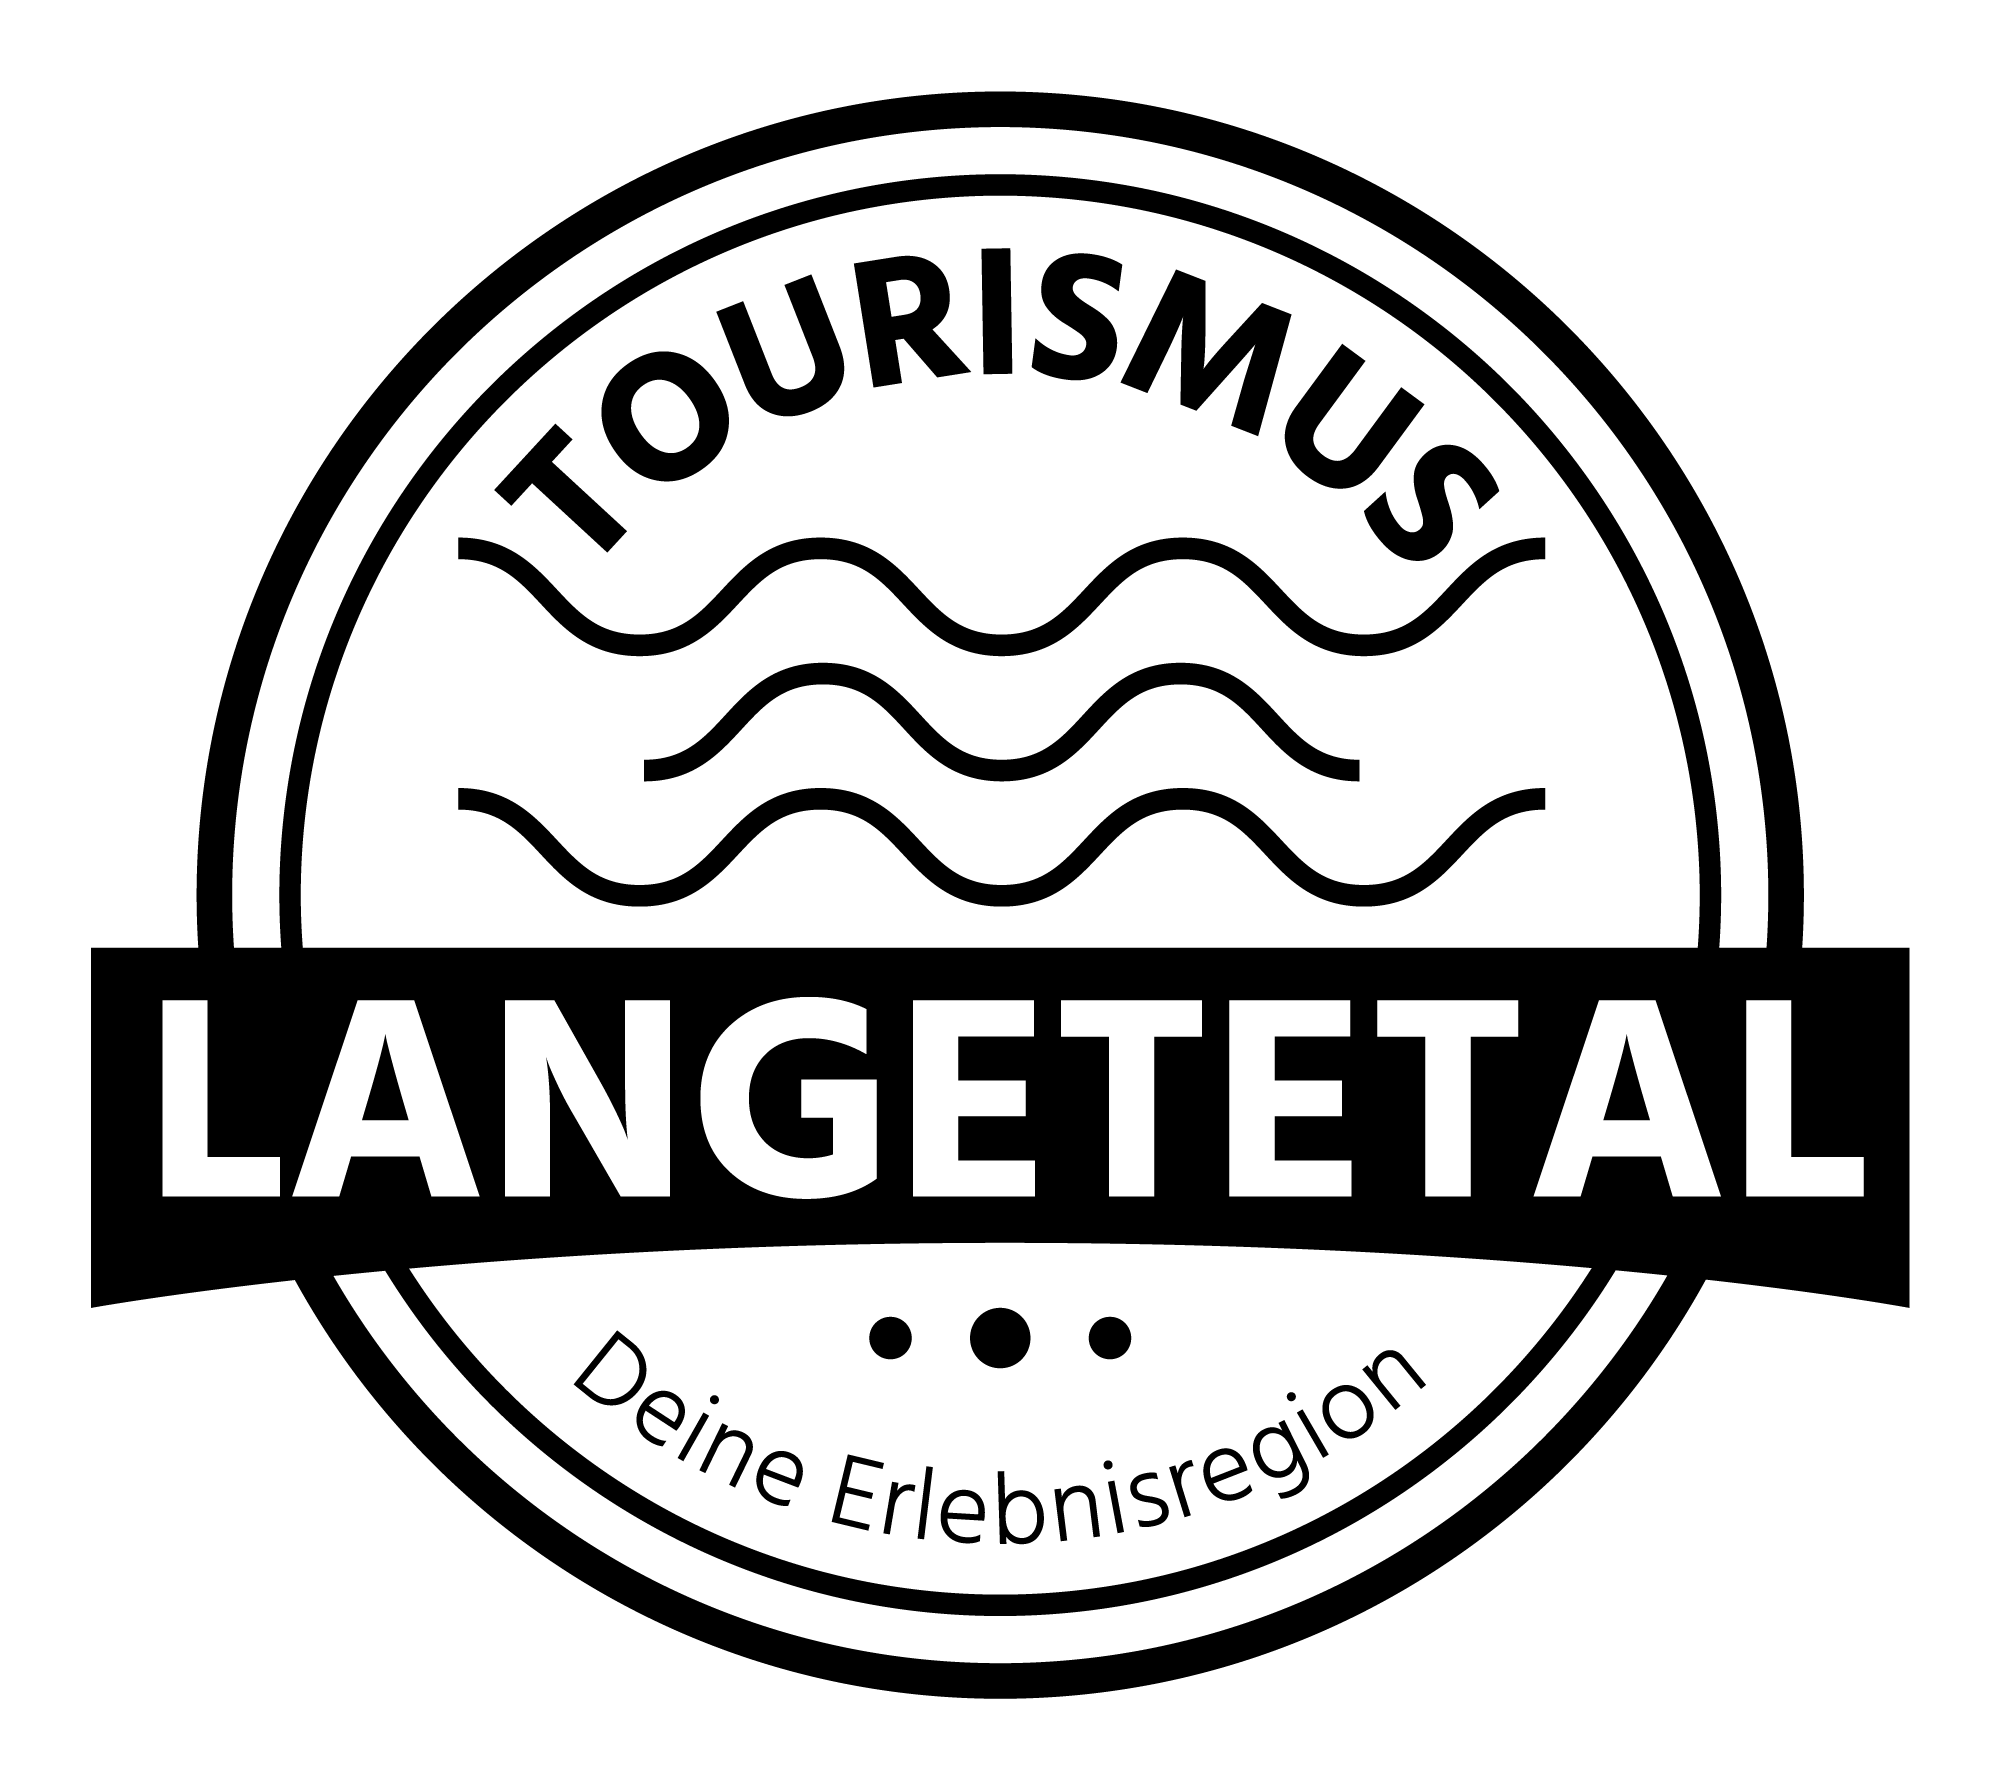 Tourismus Langetetal Logo